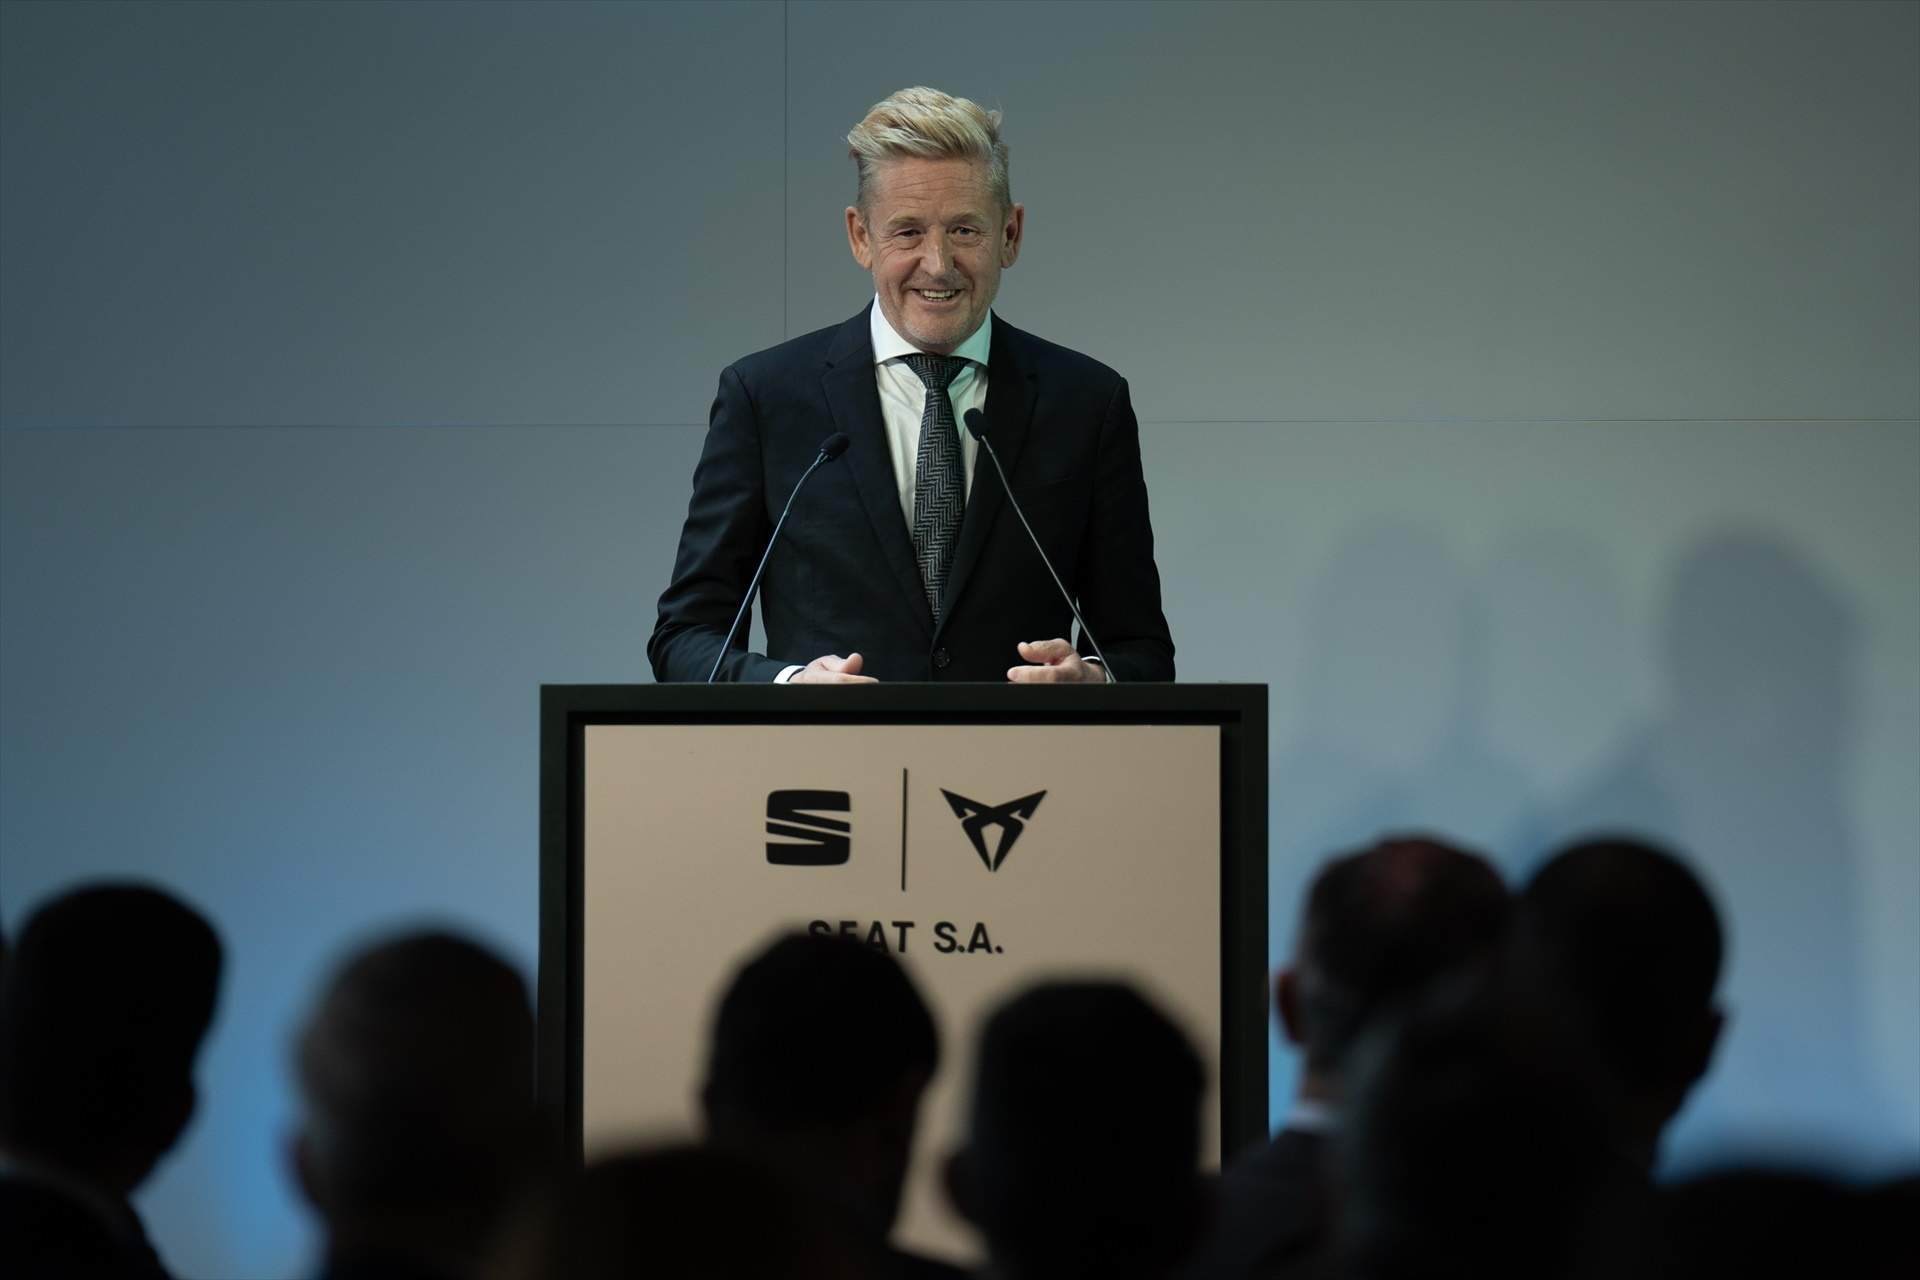 Griffiths anuncia que Cupra tendrá un eléctrico de 25.000 euros "para democratizar la electromovilidad"